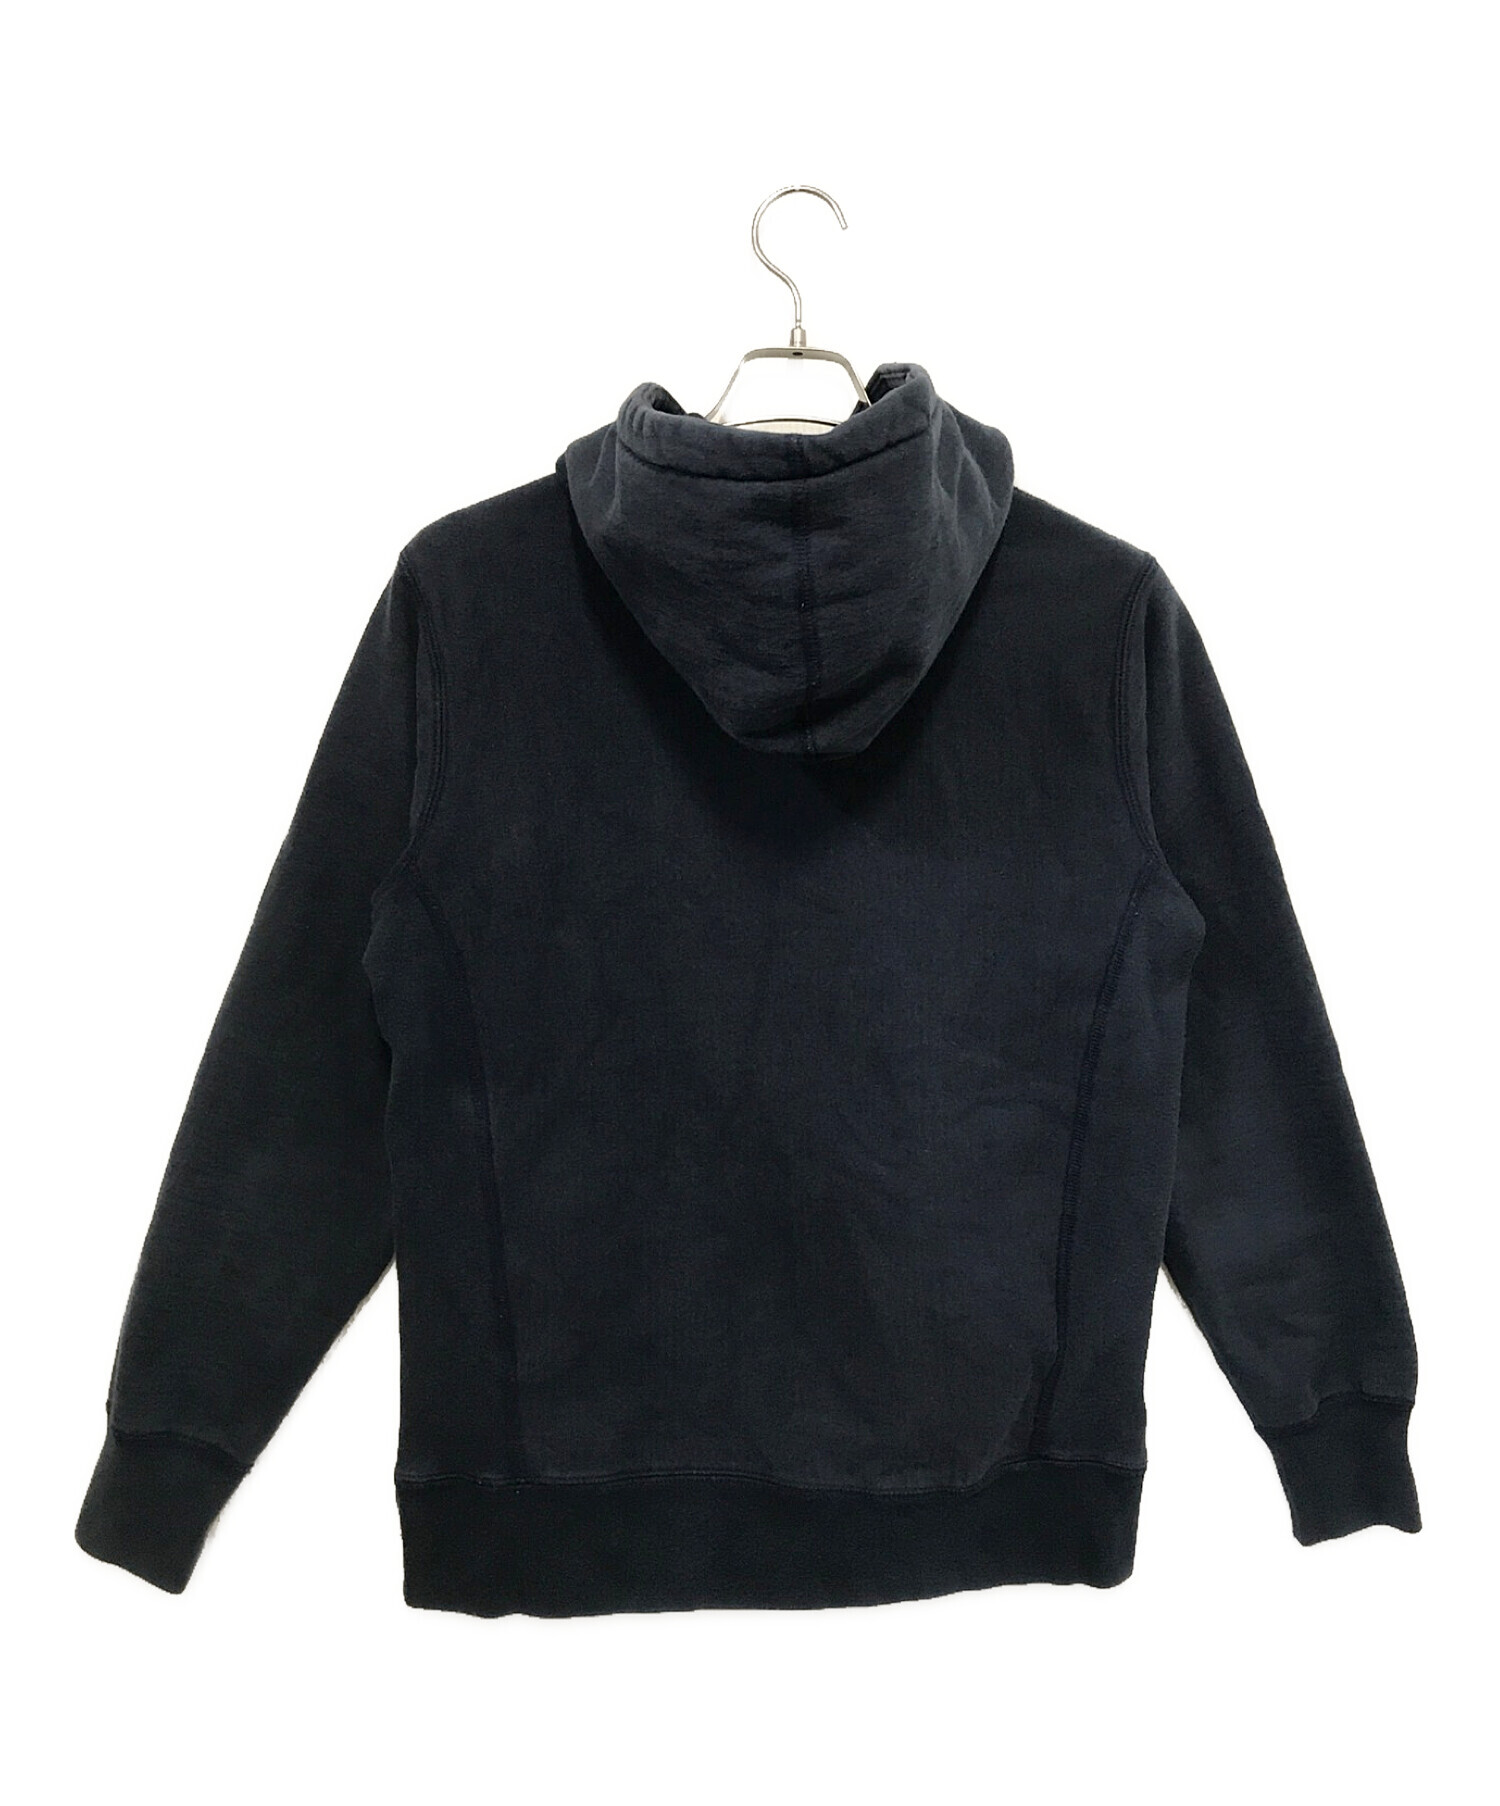 SUPREME (シュプリーム) Metallic Arc Hooded Sweatshirt / メタリック アーク フード スウェット シャツ  ネイビー サイズ:S